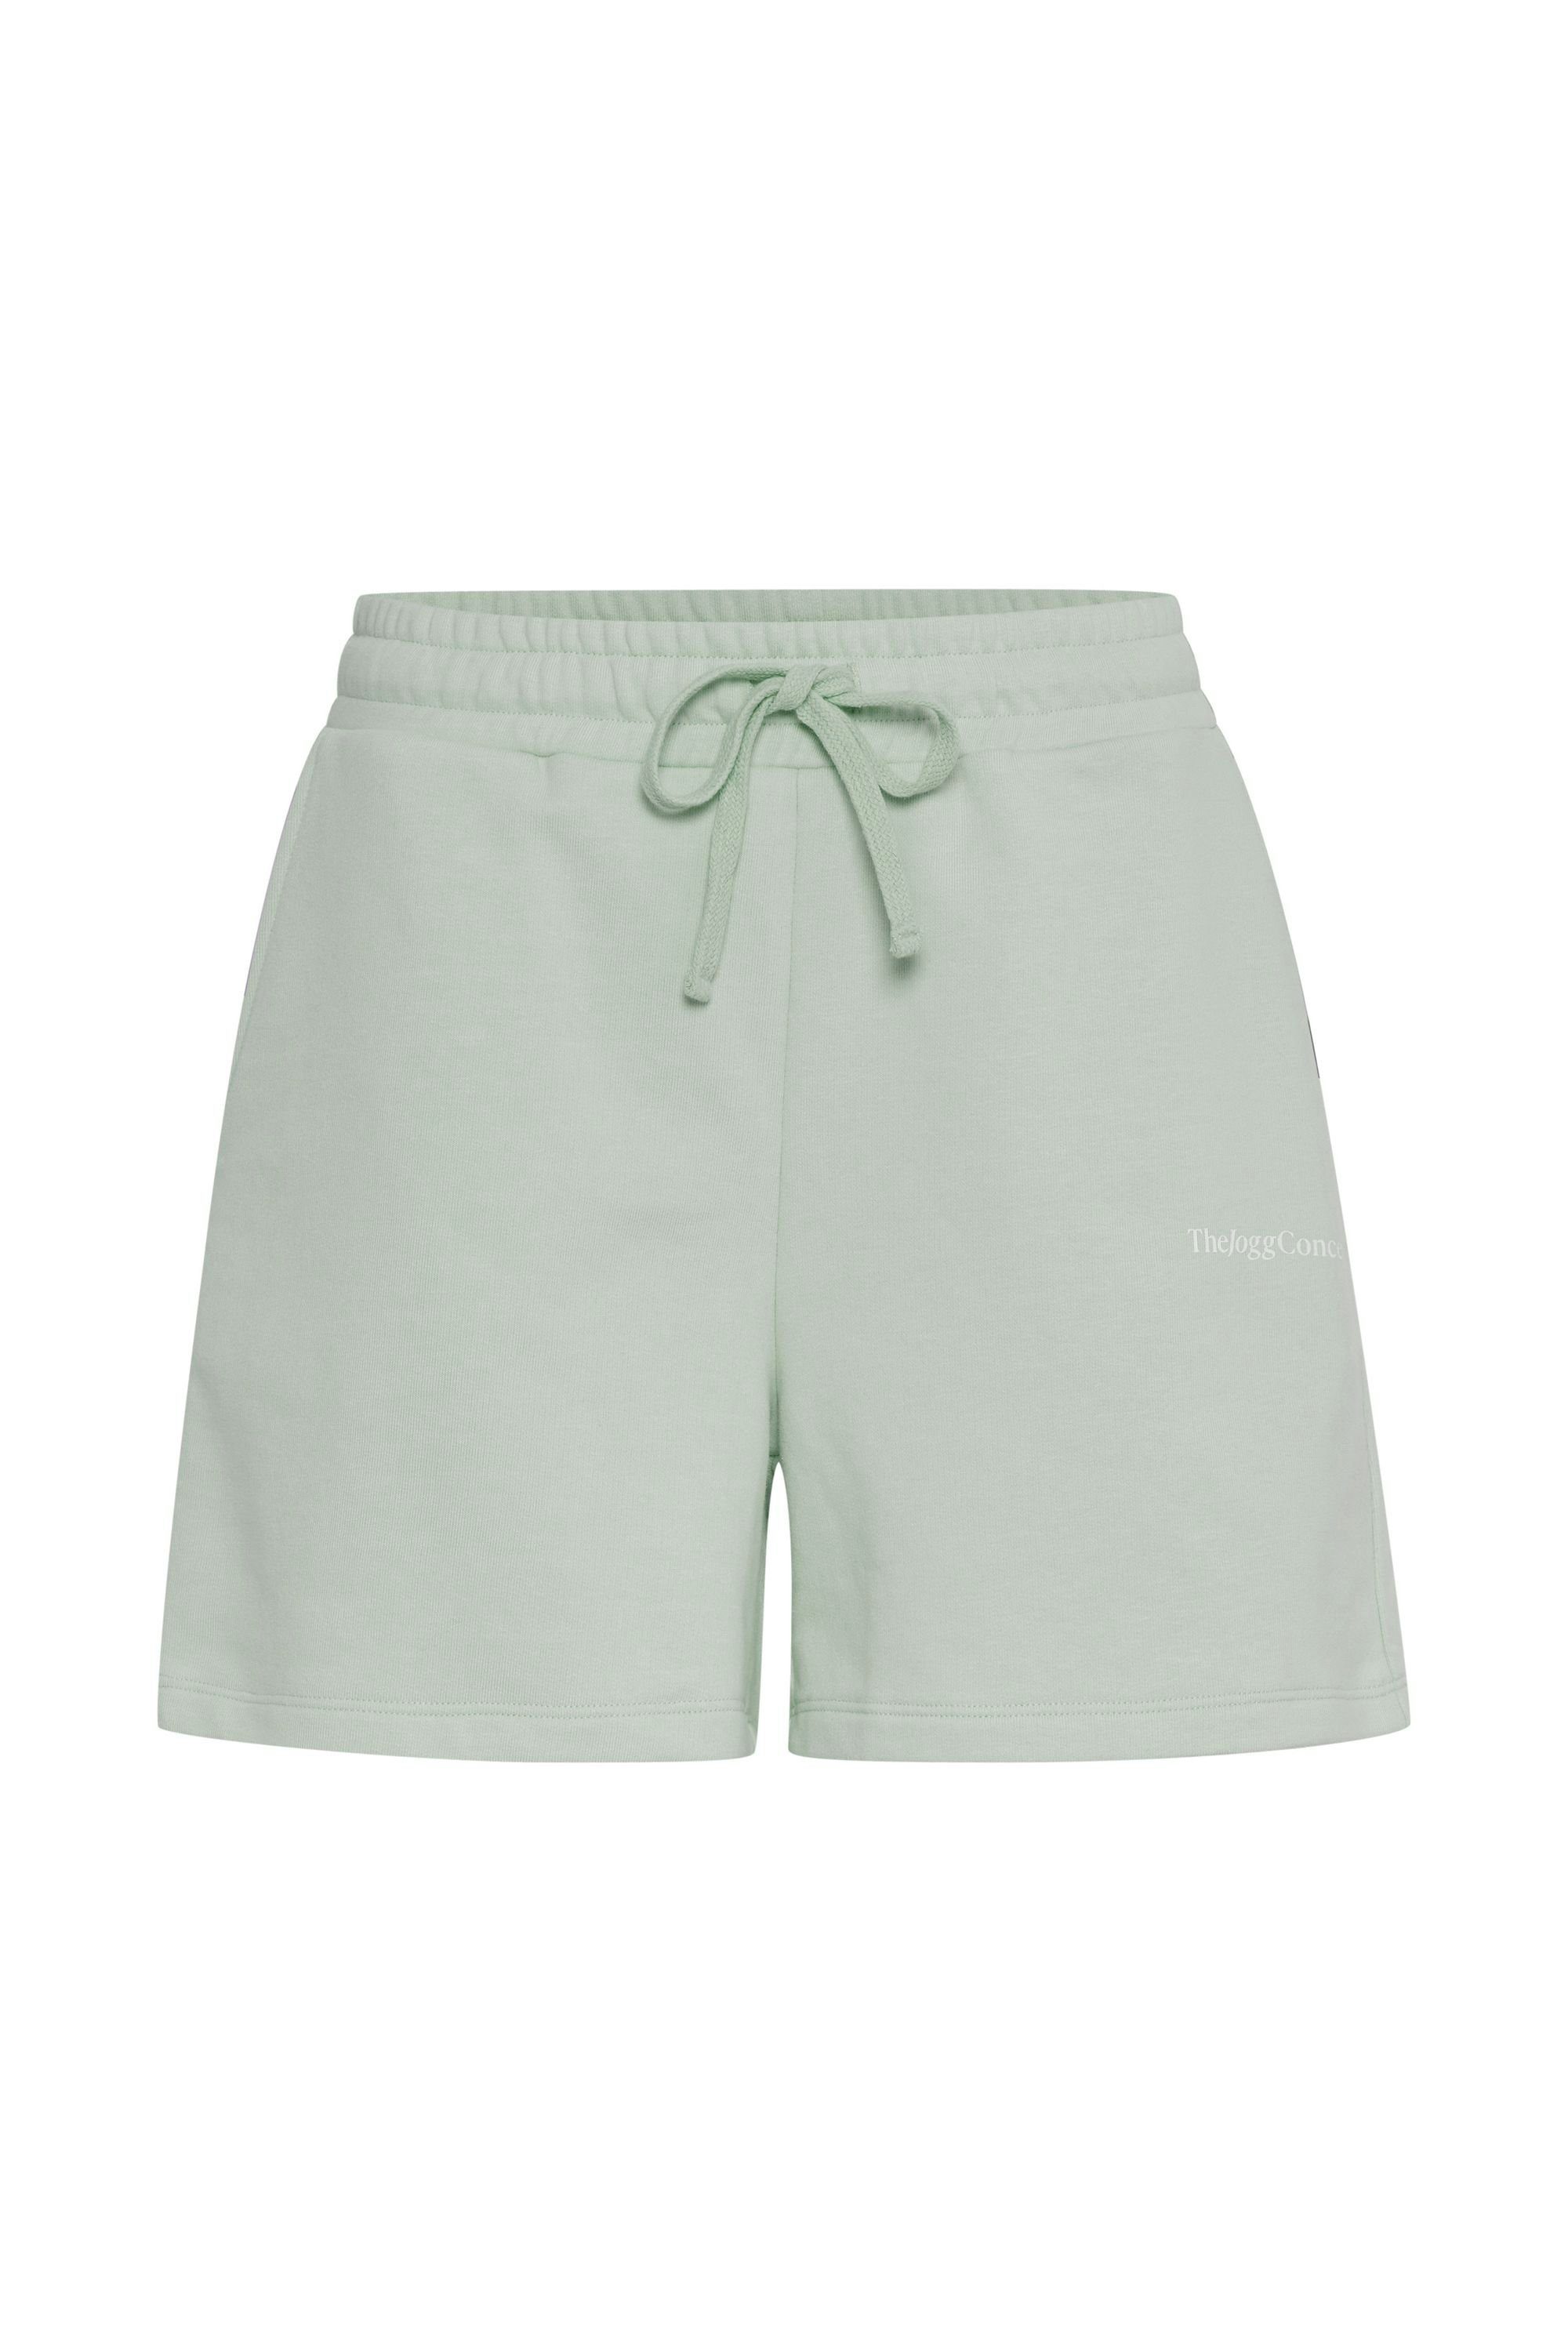 Sweatshorts - JCSAFINE TheJoggConcept. Frosty Green SHORTS bequeme (155706) lässige Shorts und 22800019